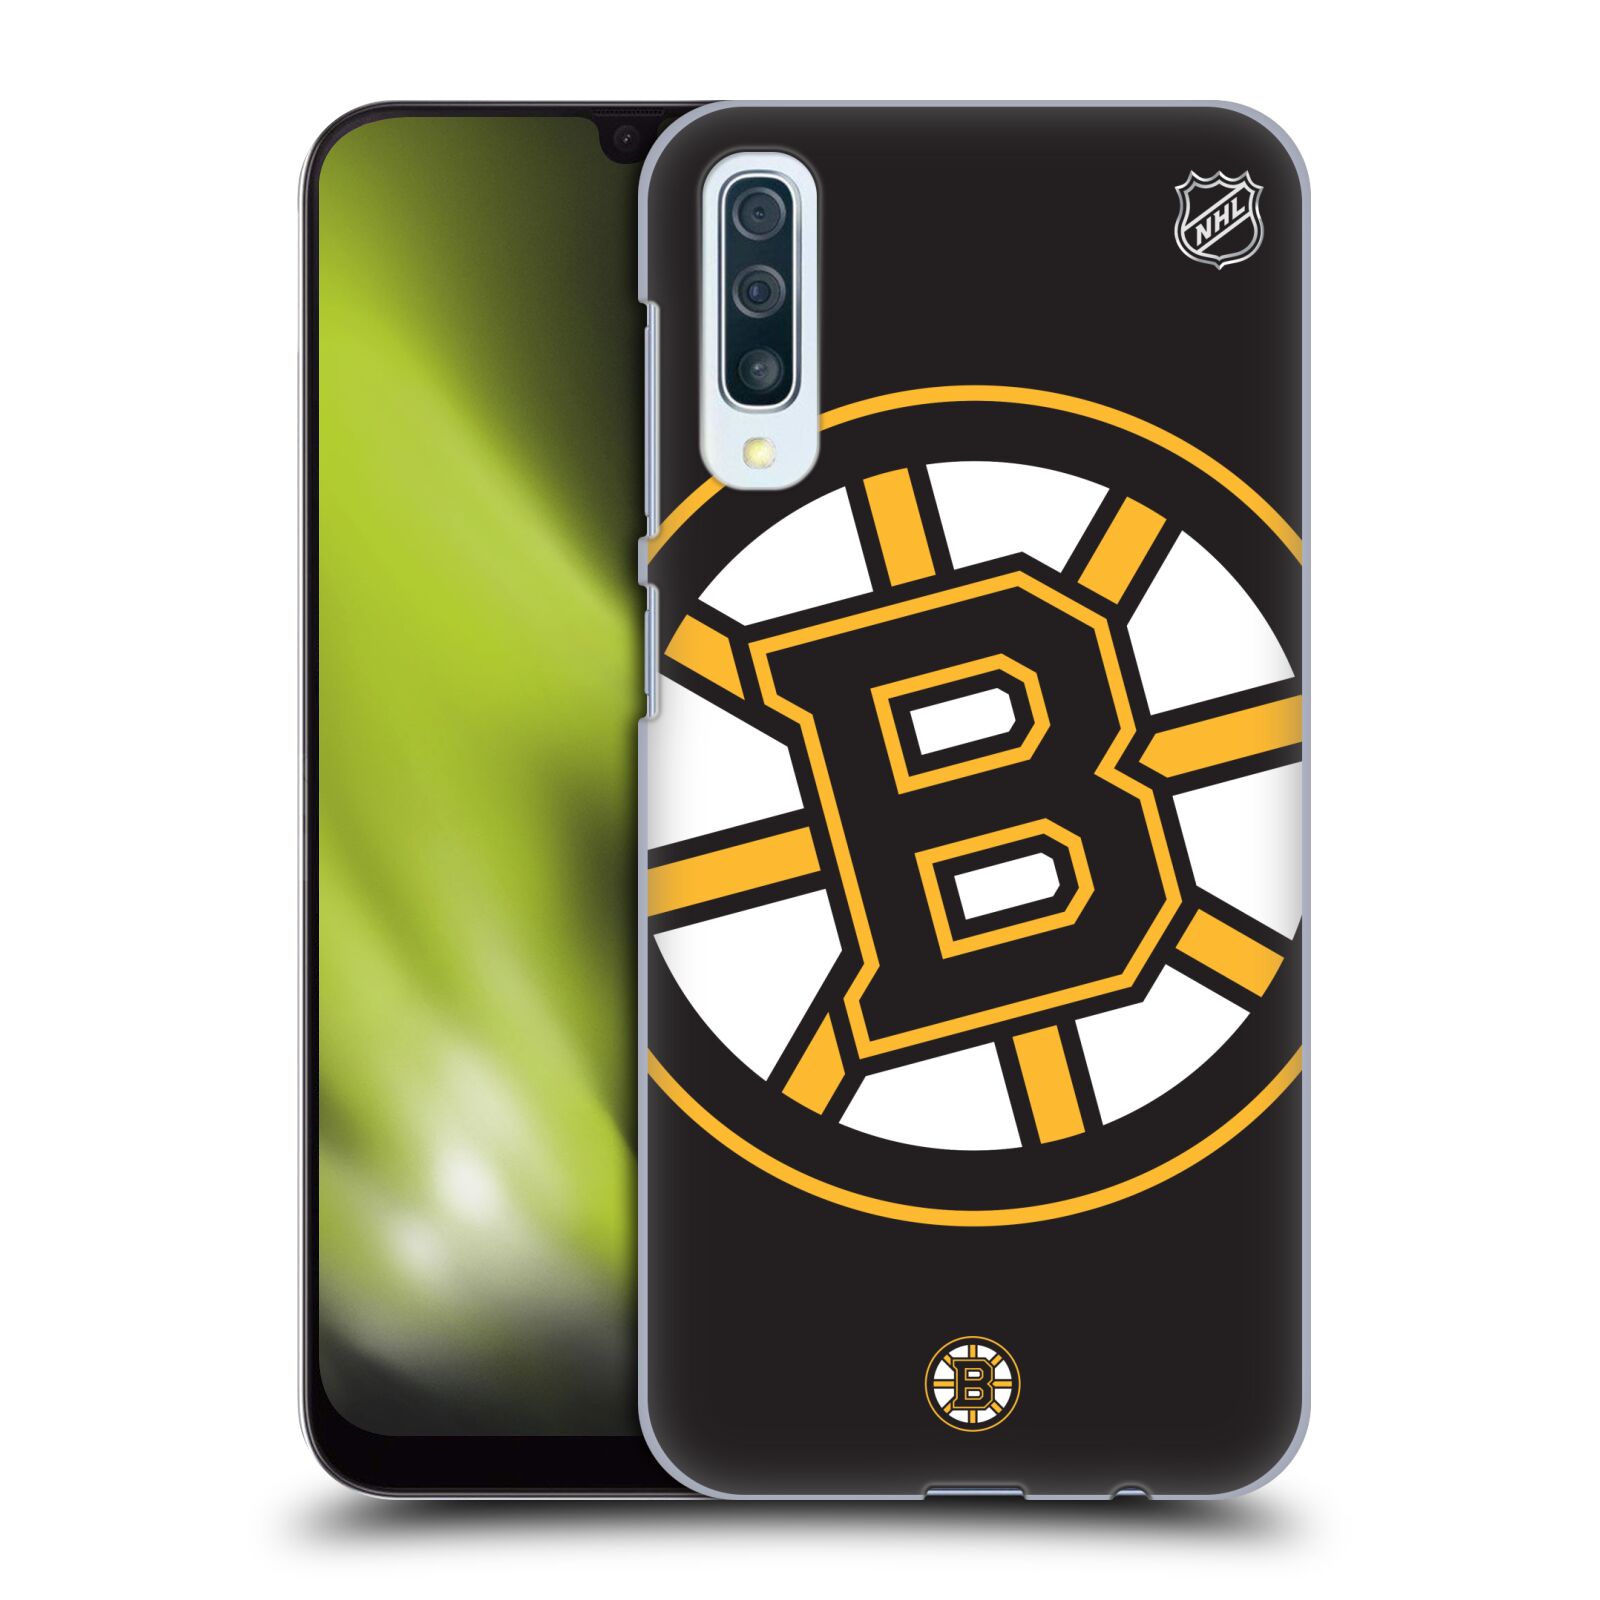 Pouzdro na mobil Samsung Galaxy A50 - HEAD CASE - Hokej NHL - Boston Bruins - velký znak